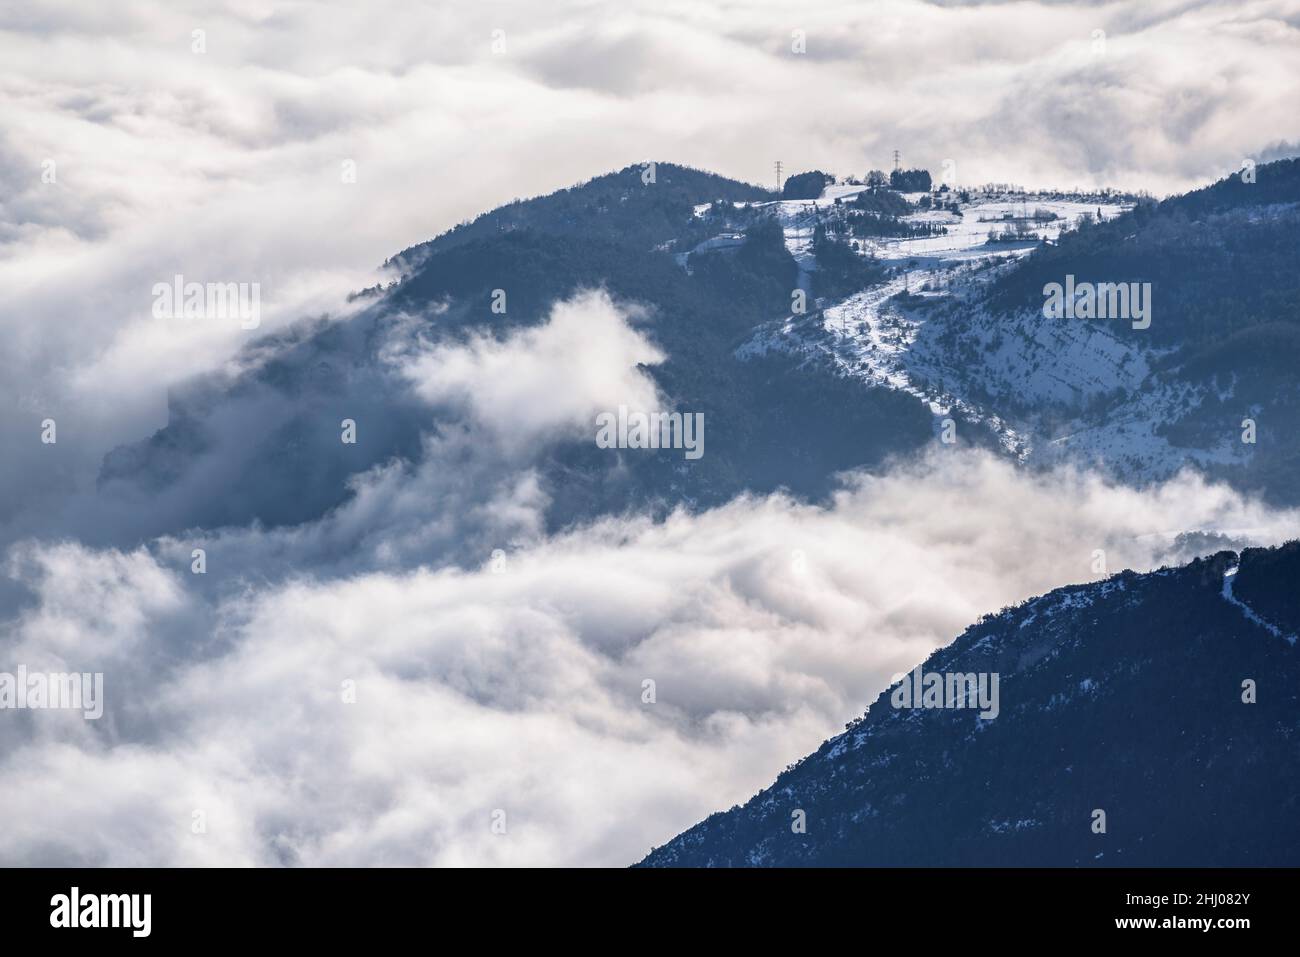 La valle di Llobregat coperta da un mare di nuvole durante l'inverno, visto dal Coll de Pal (Barcellona, Catalogna, Spagna, Pirenei) Foto Stock